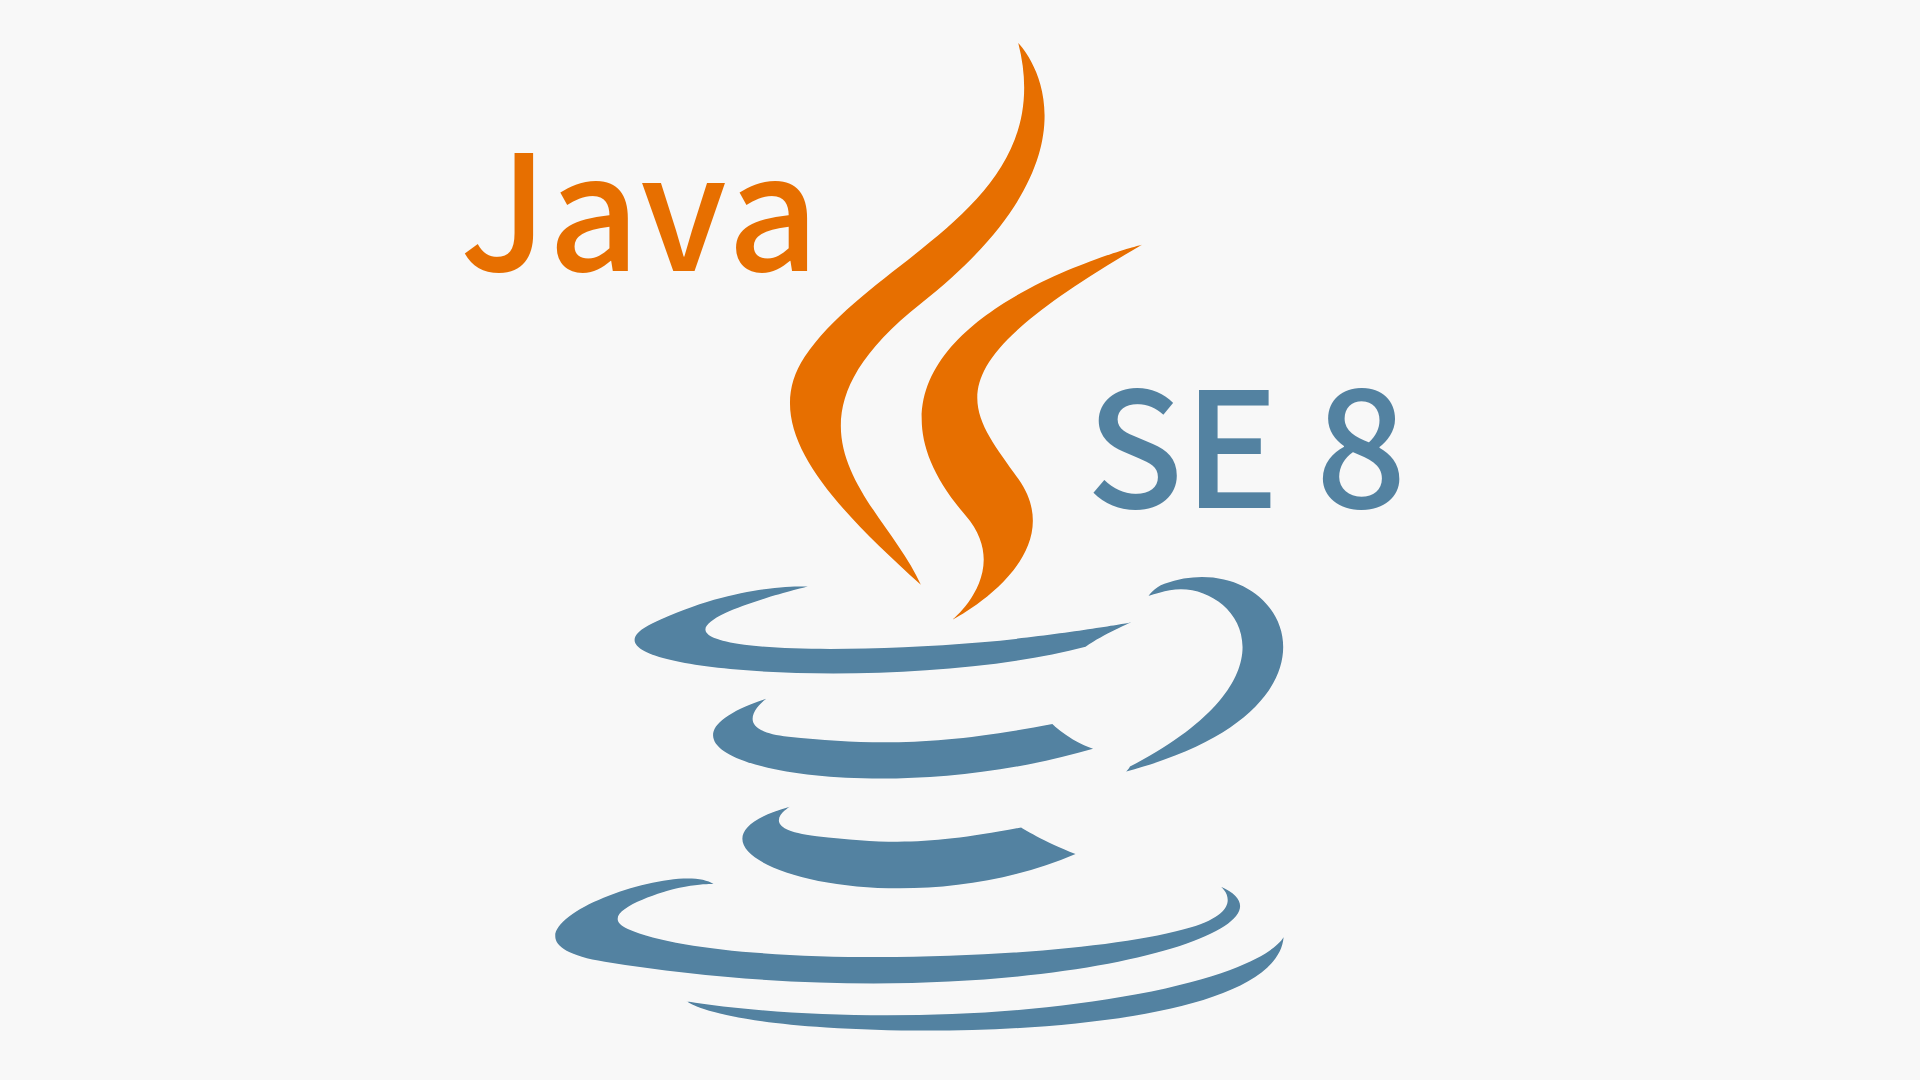 【Java SE 8 対応】 Java プログラミング Step1